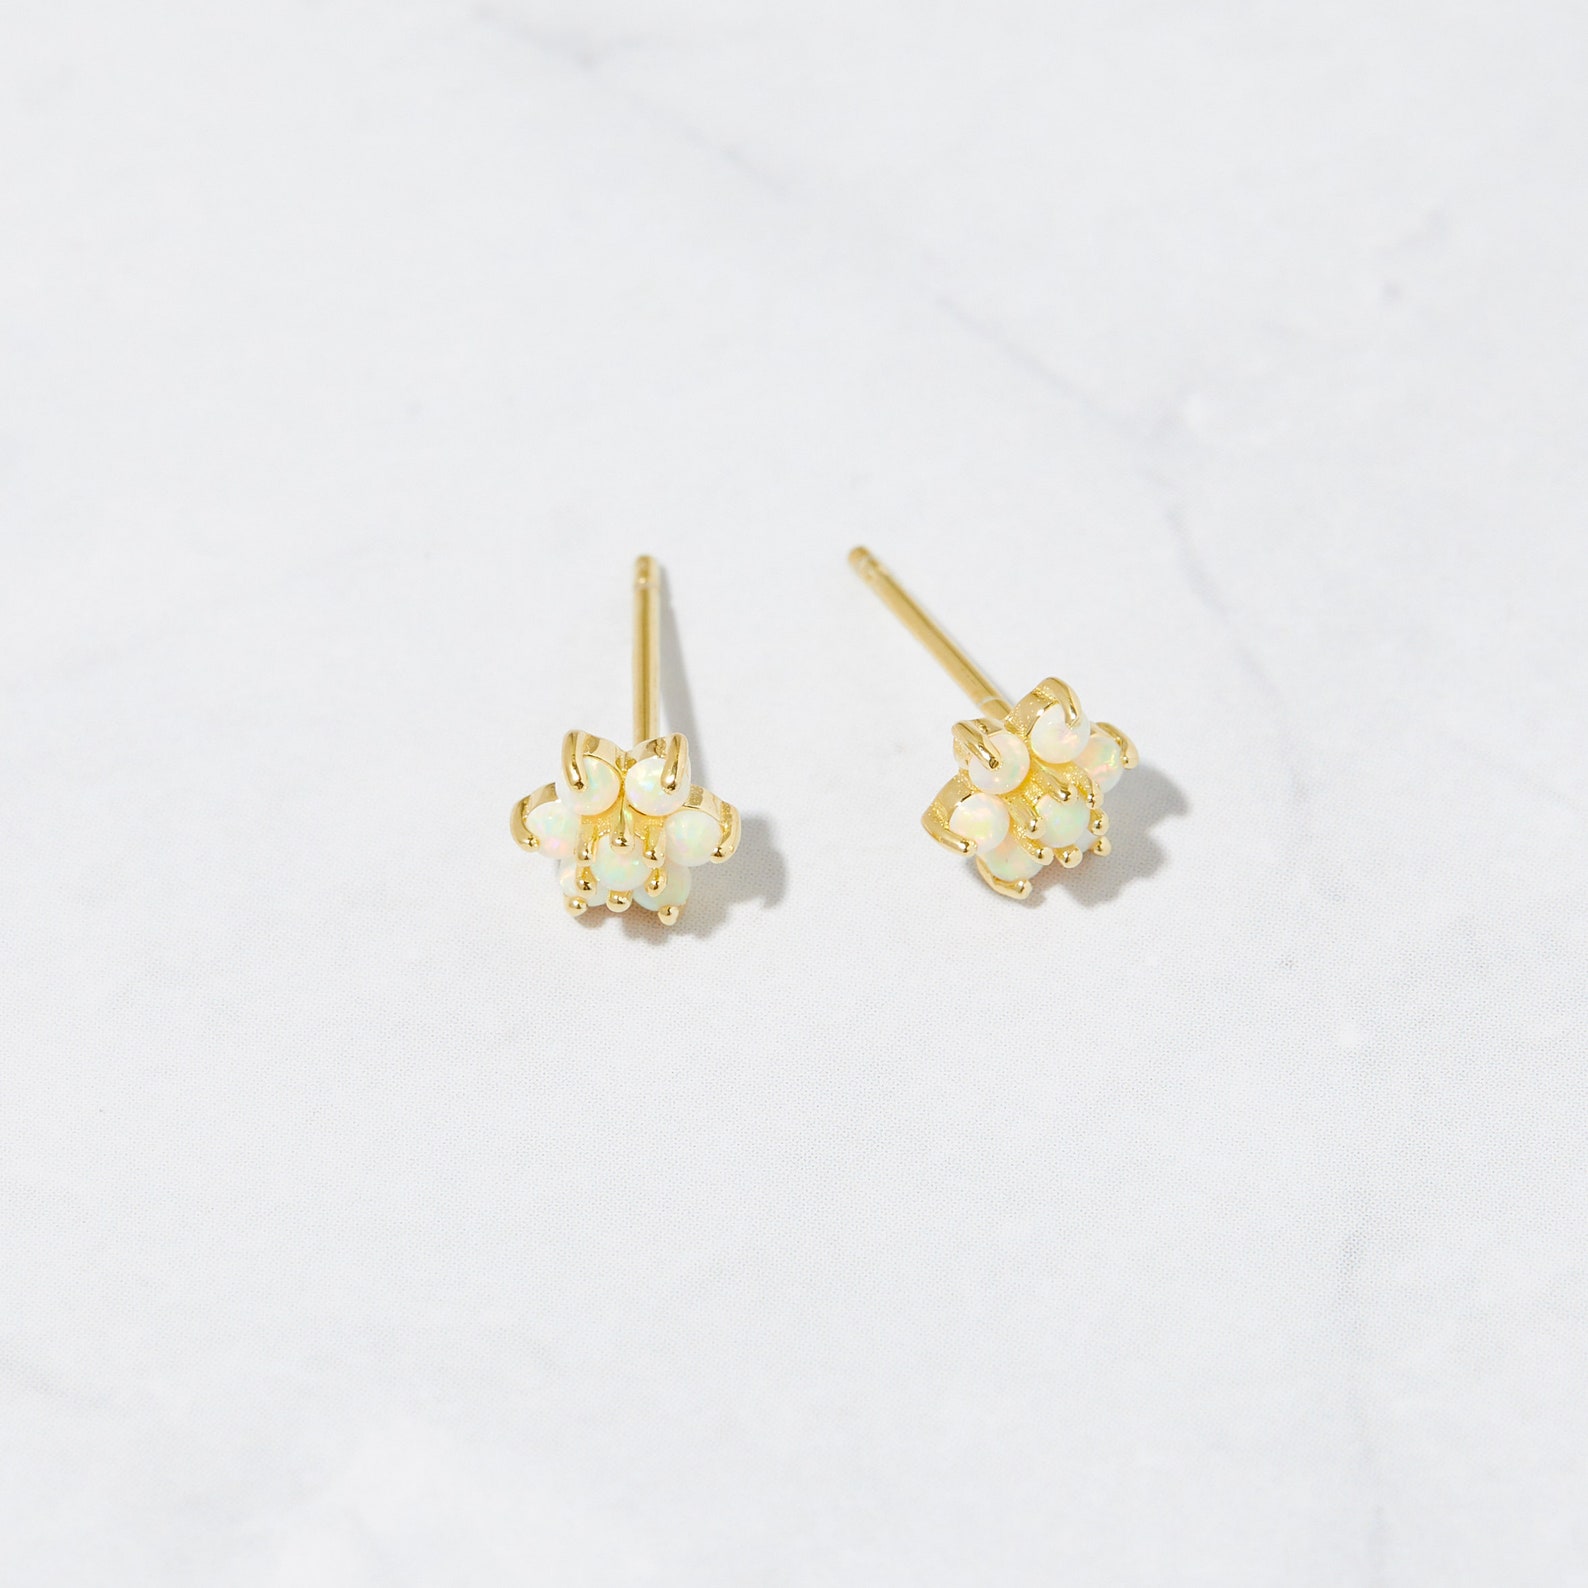 Opal Stud Earrings Small Studs Dainty Studs Minimalist - Etsy